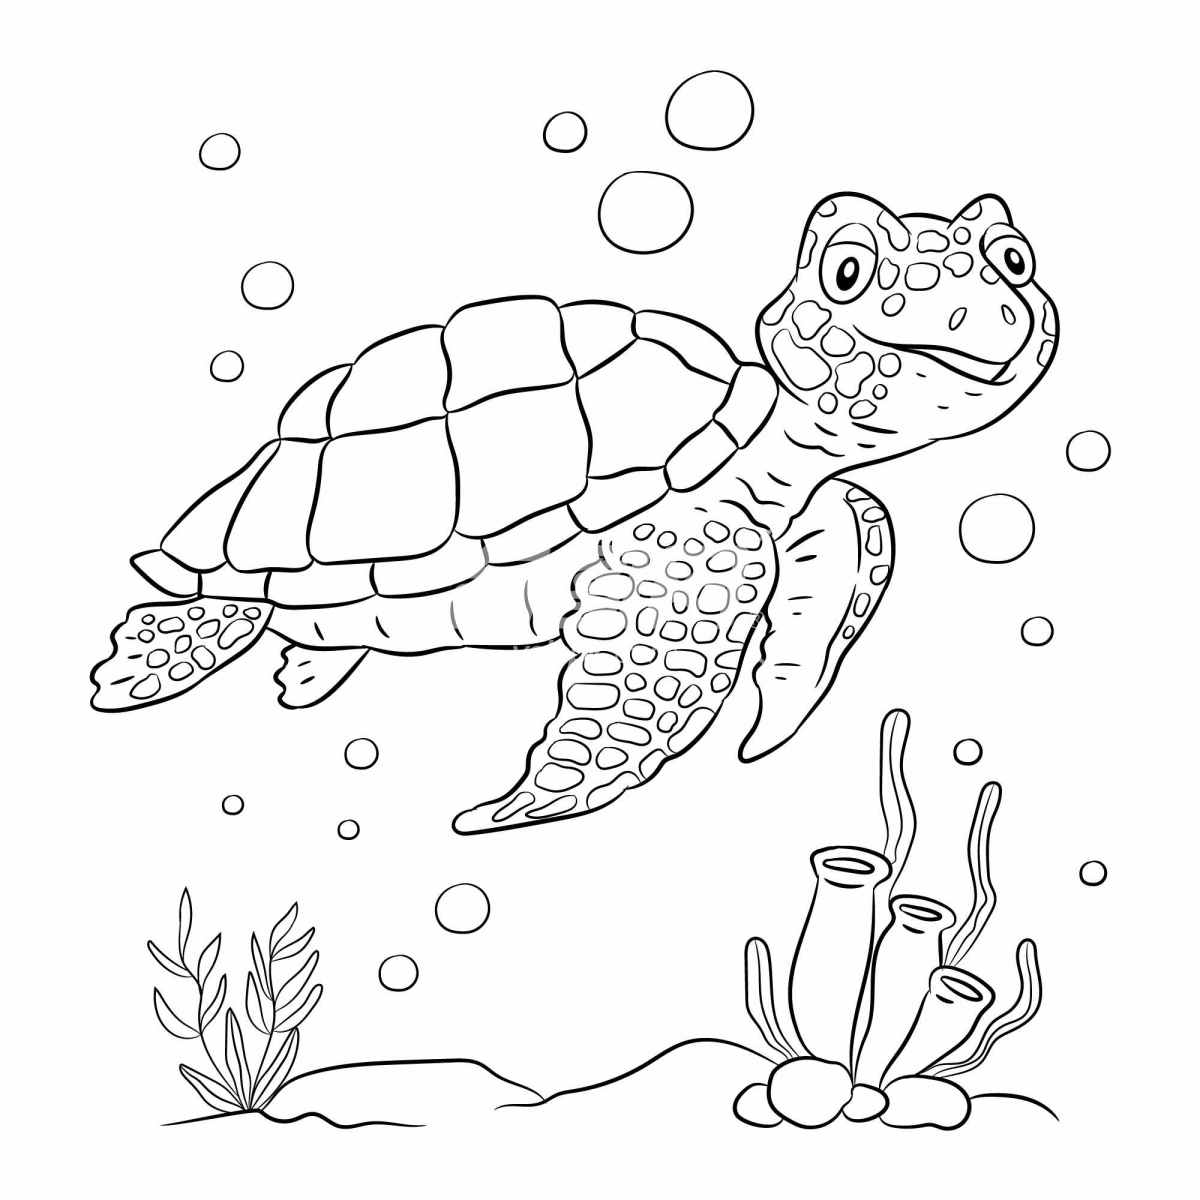 黑白线条画的海龟插画